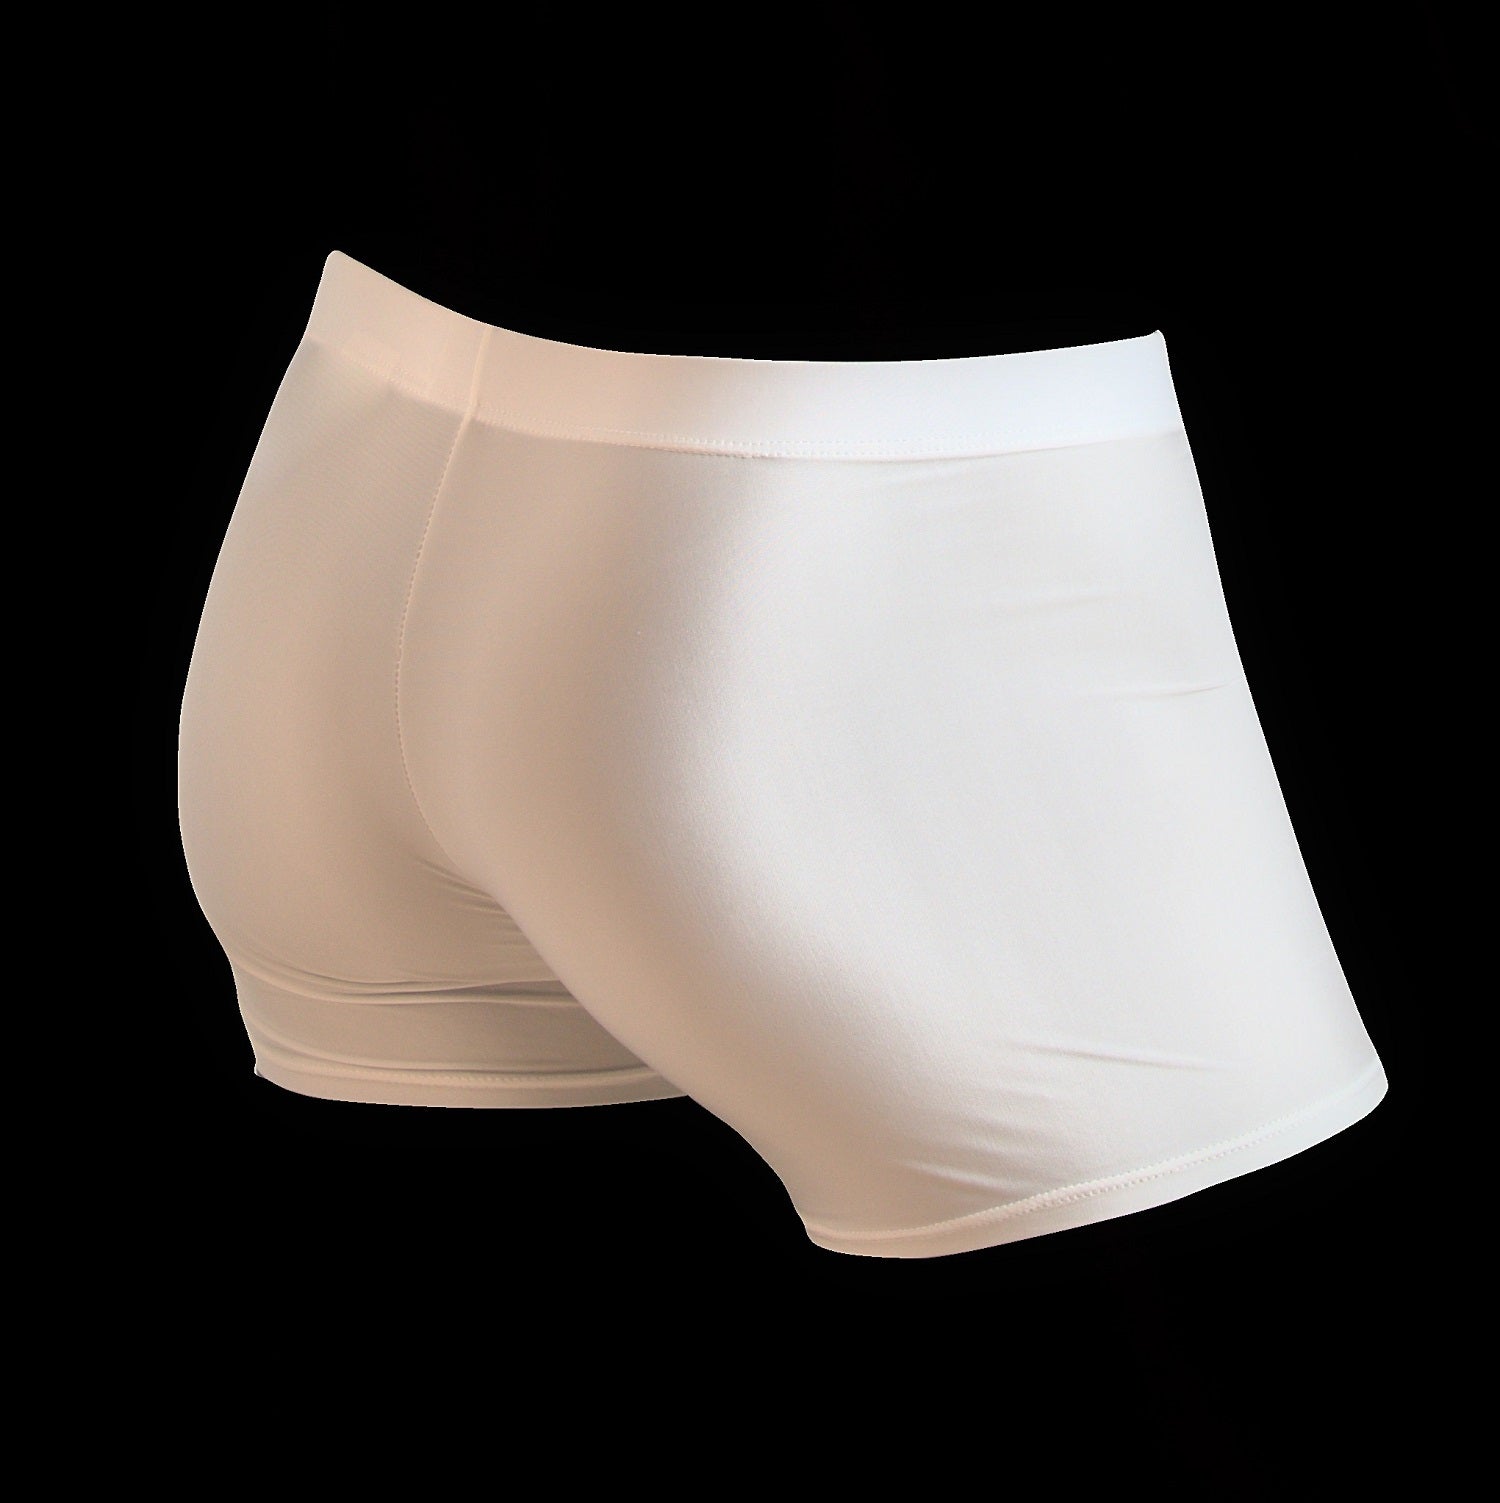 Designer Men's Underwear